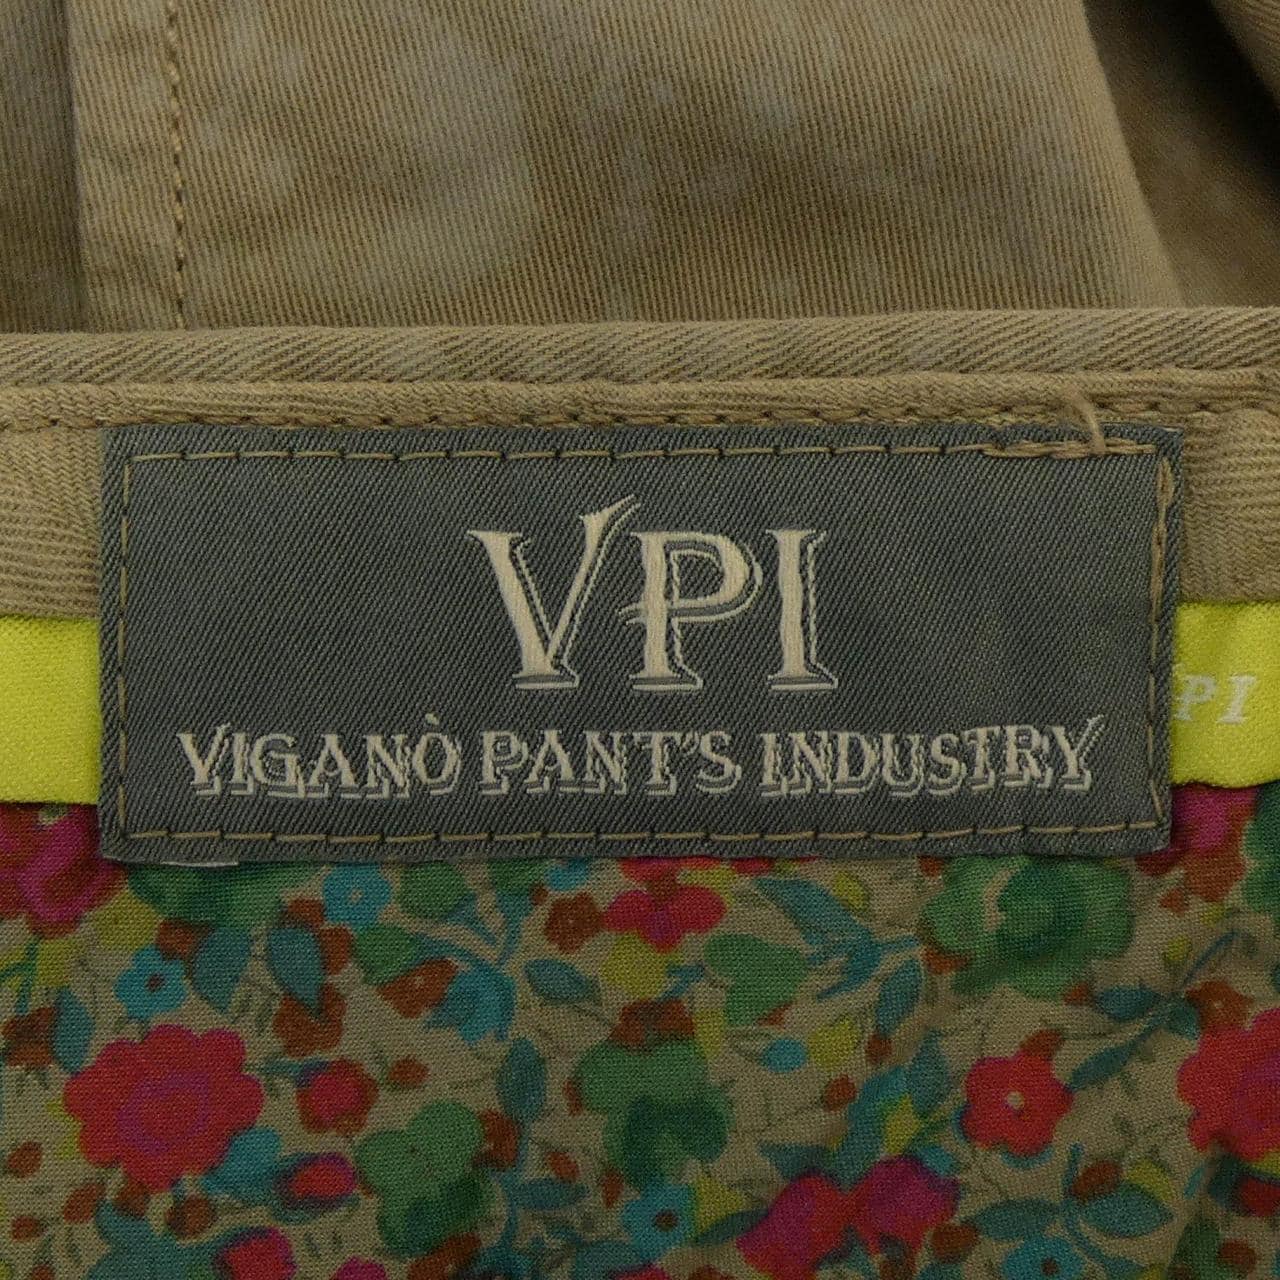 维加诺VIGANO裤